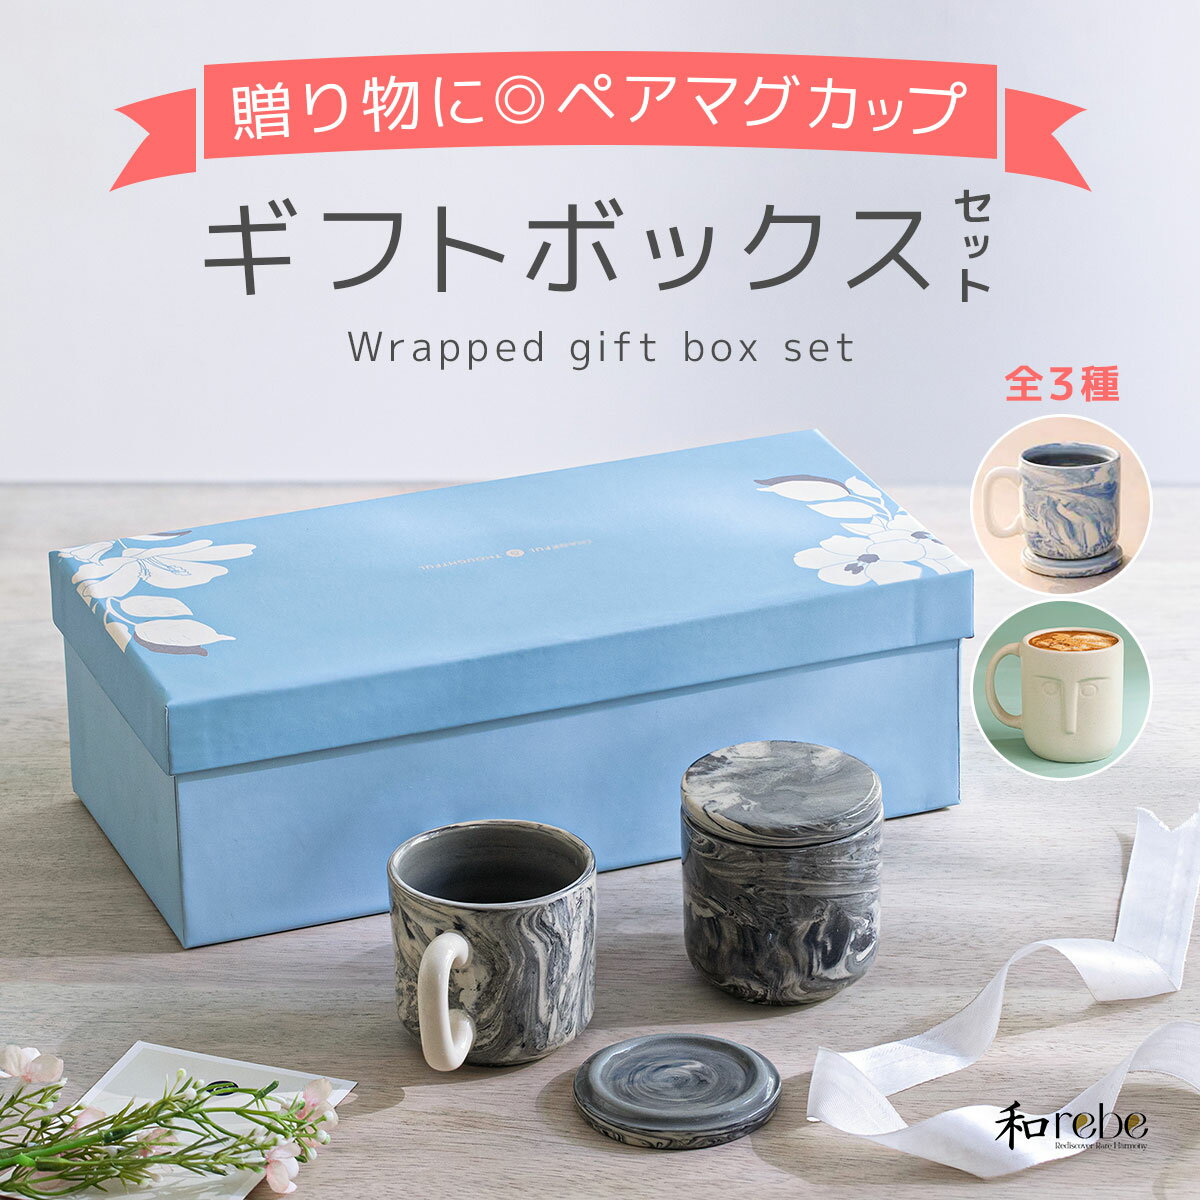 【送料無料】ペア マグカップ ギフトボックス (...の商品画像